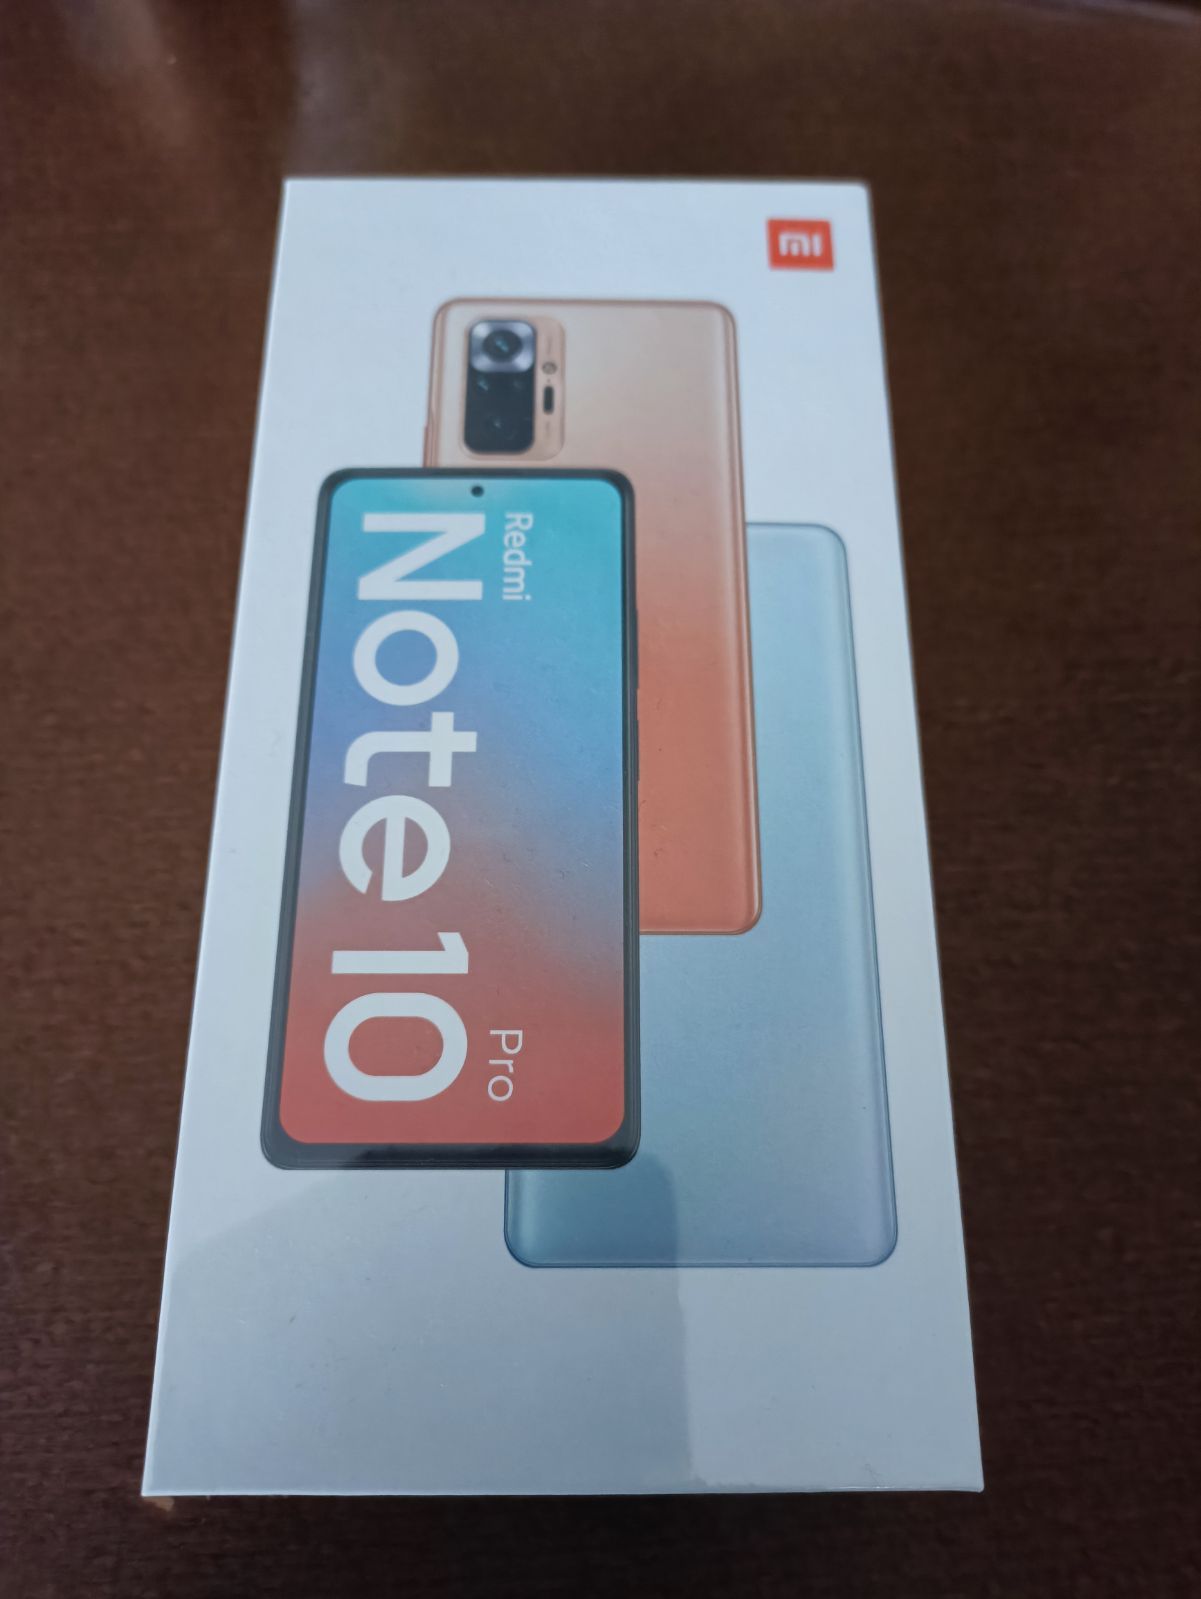 新品未開封 Xiaomi Redmi Note 10pro 128GB ブロンズ